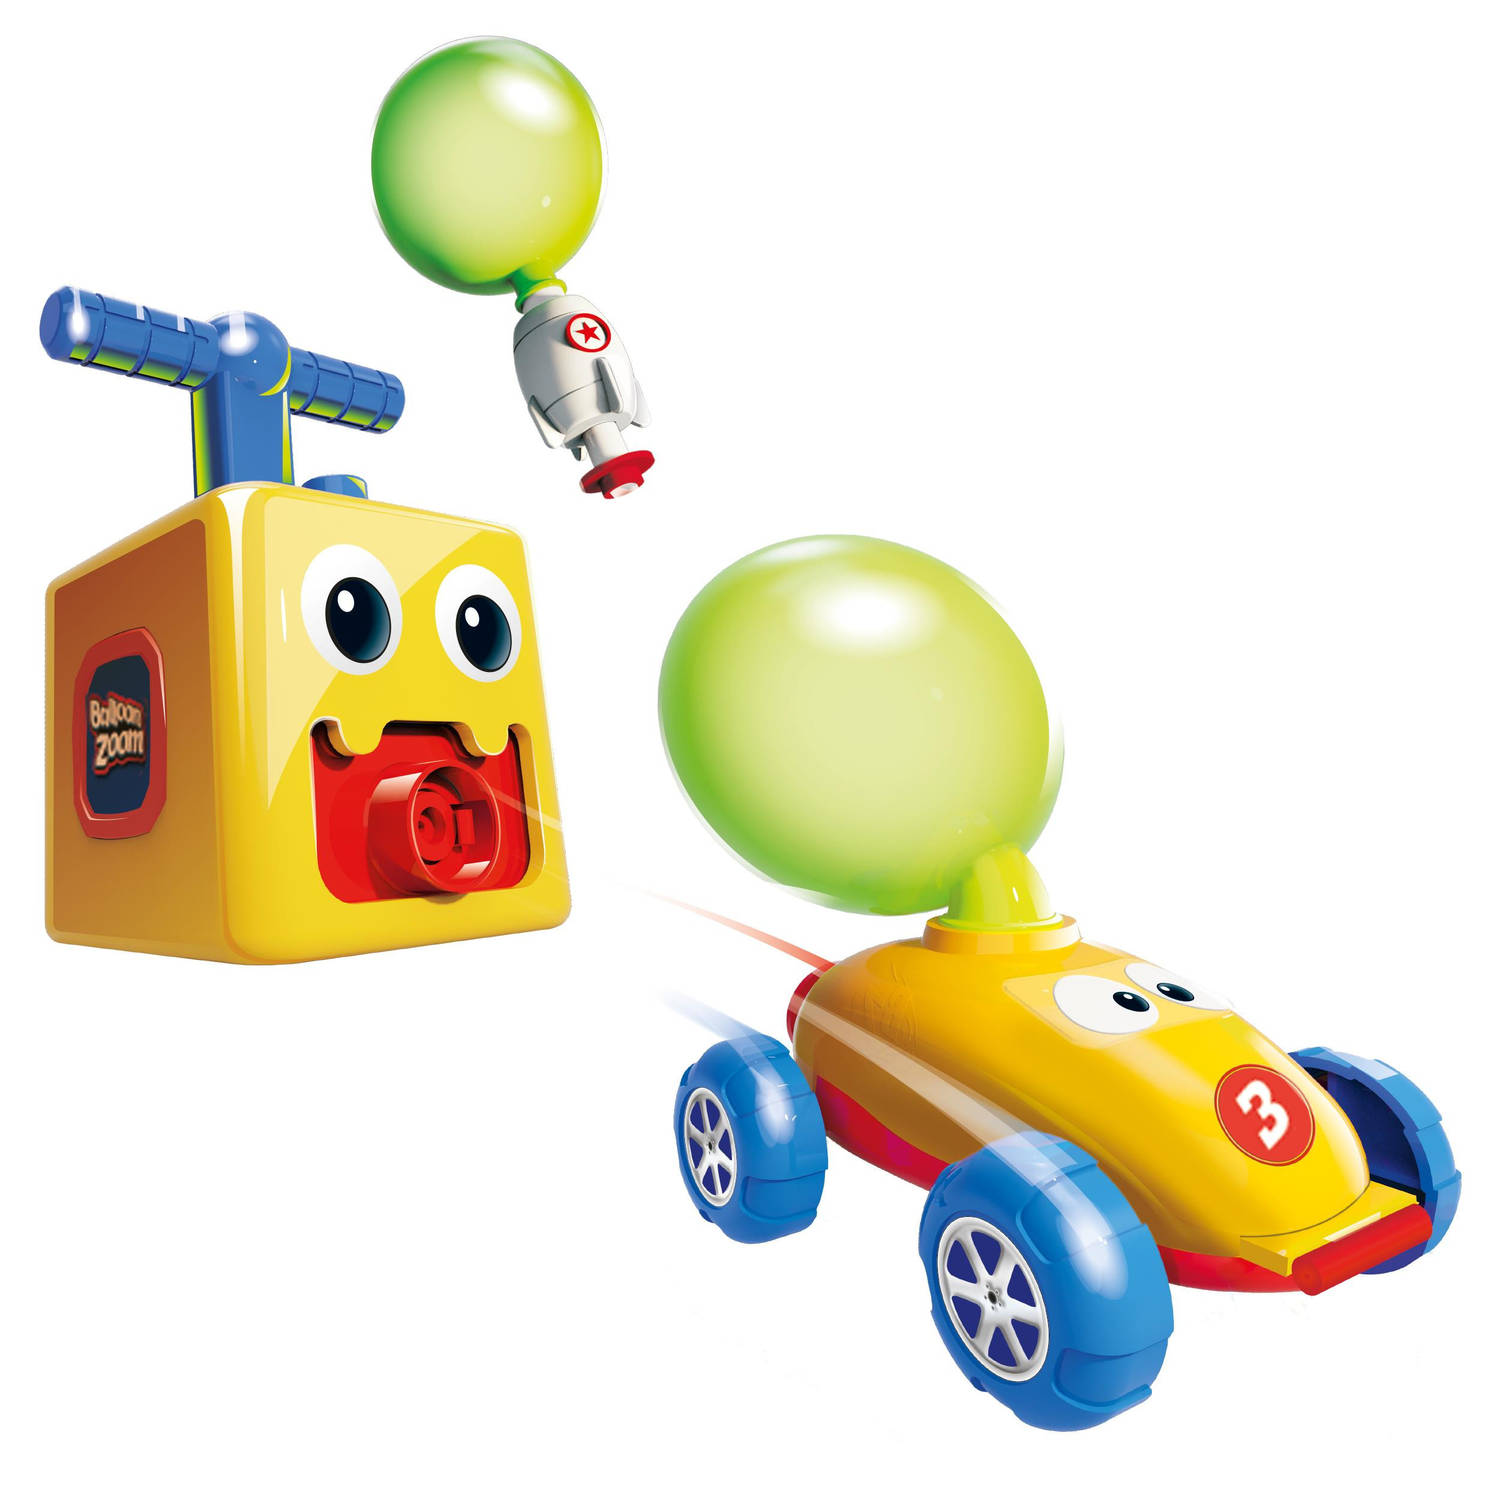 Mediashop Balloon Zoom - Ballon-auto-speelgoed voor kinderen vanaf 3 jaar - inclusief auto en raketmodus - gloeit in het donker